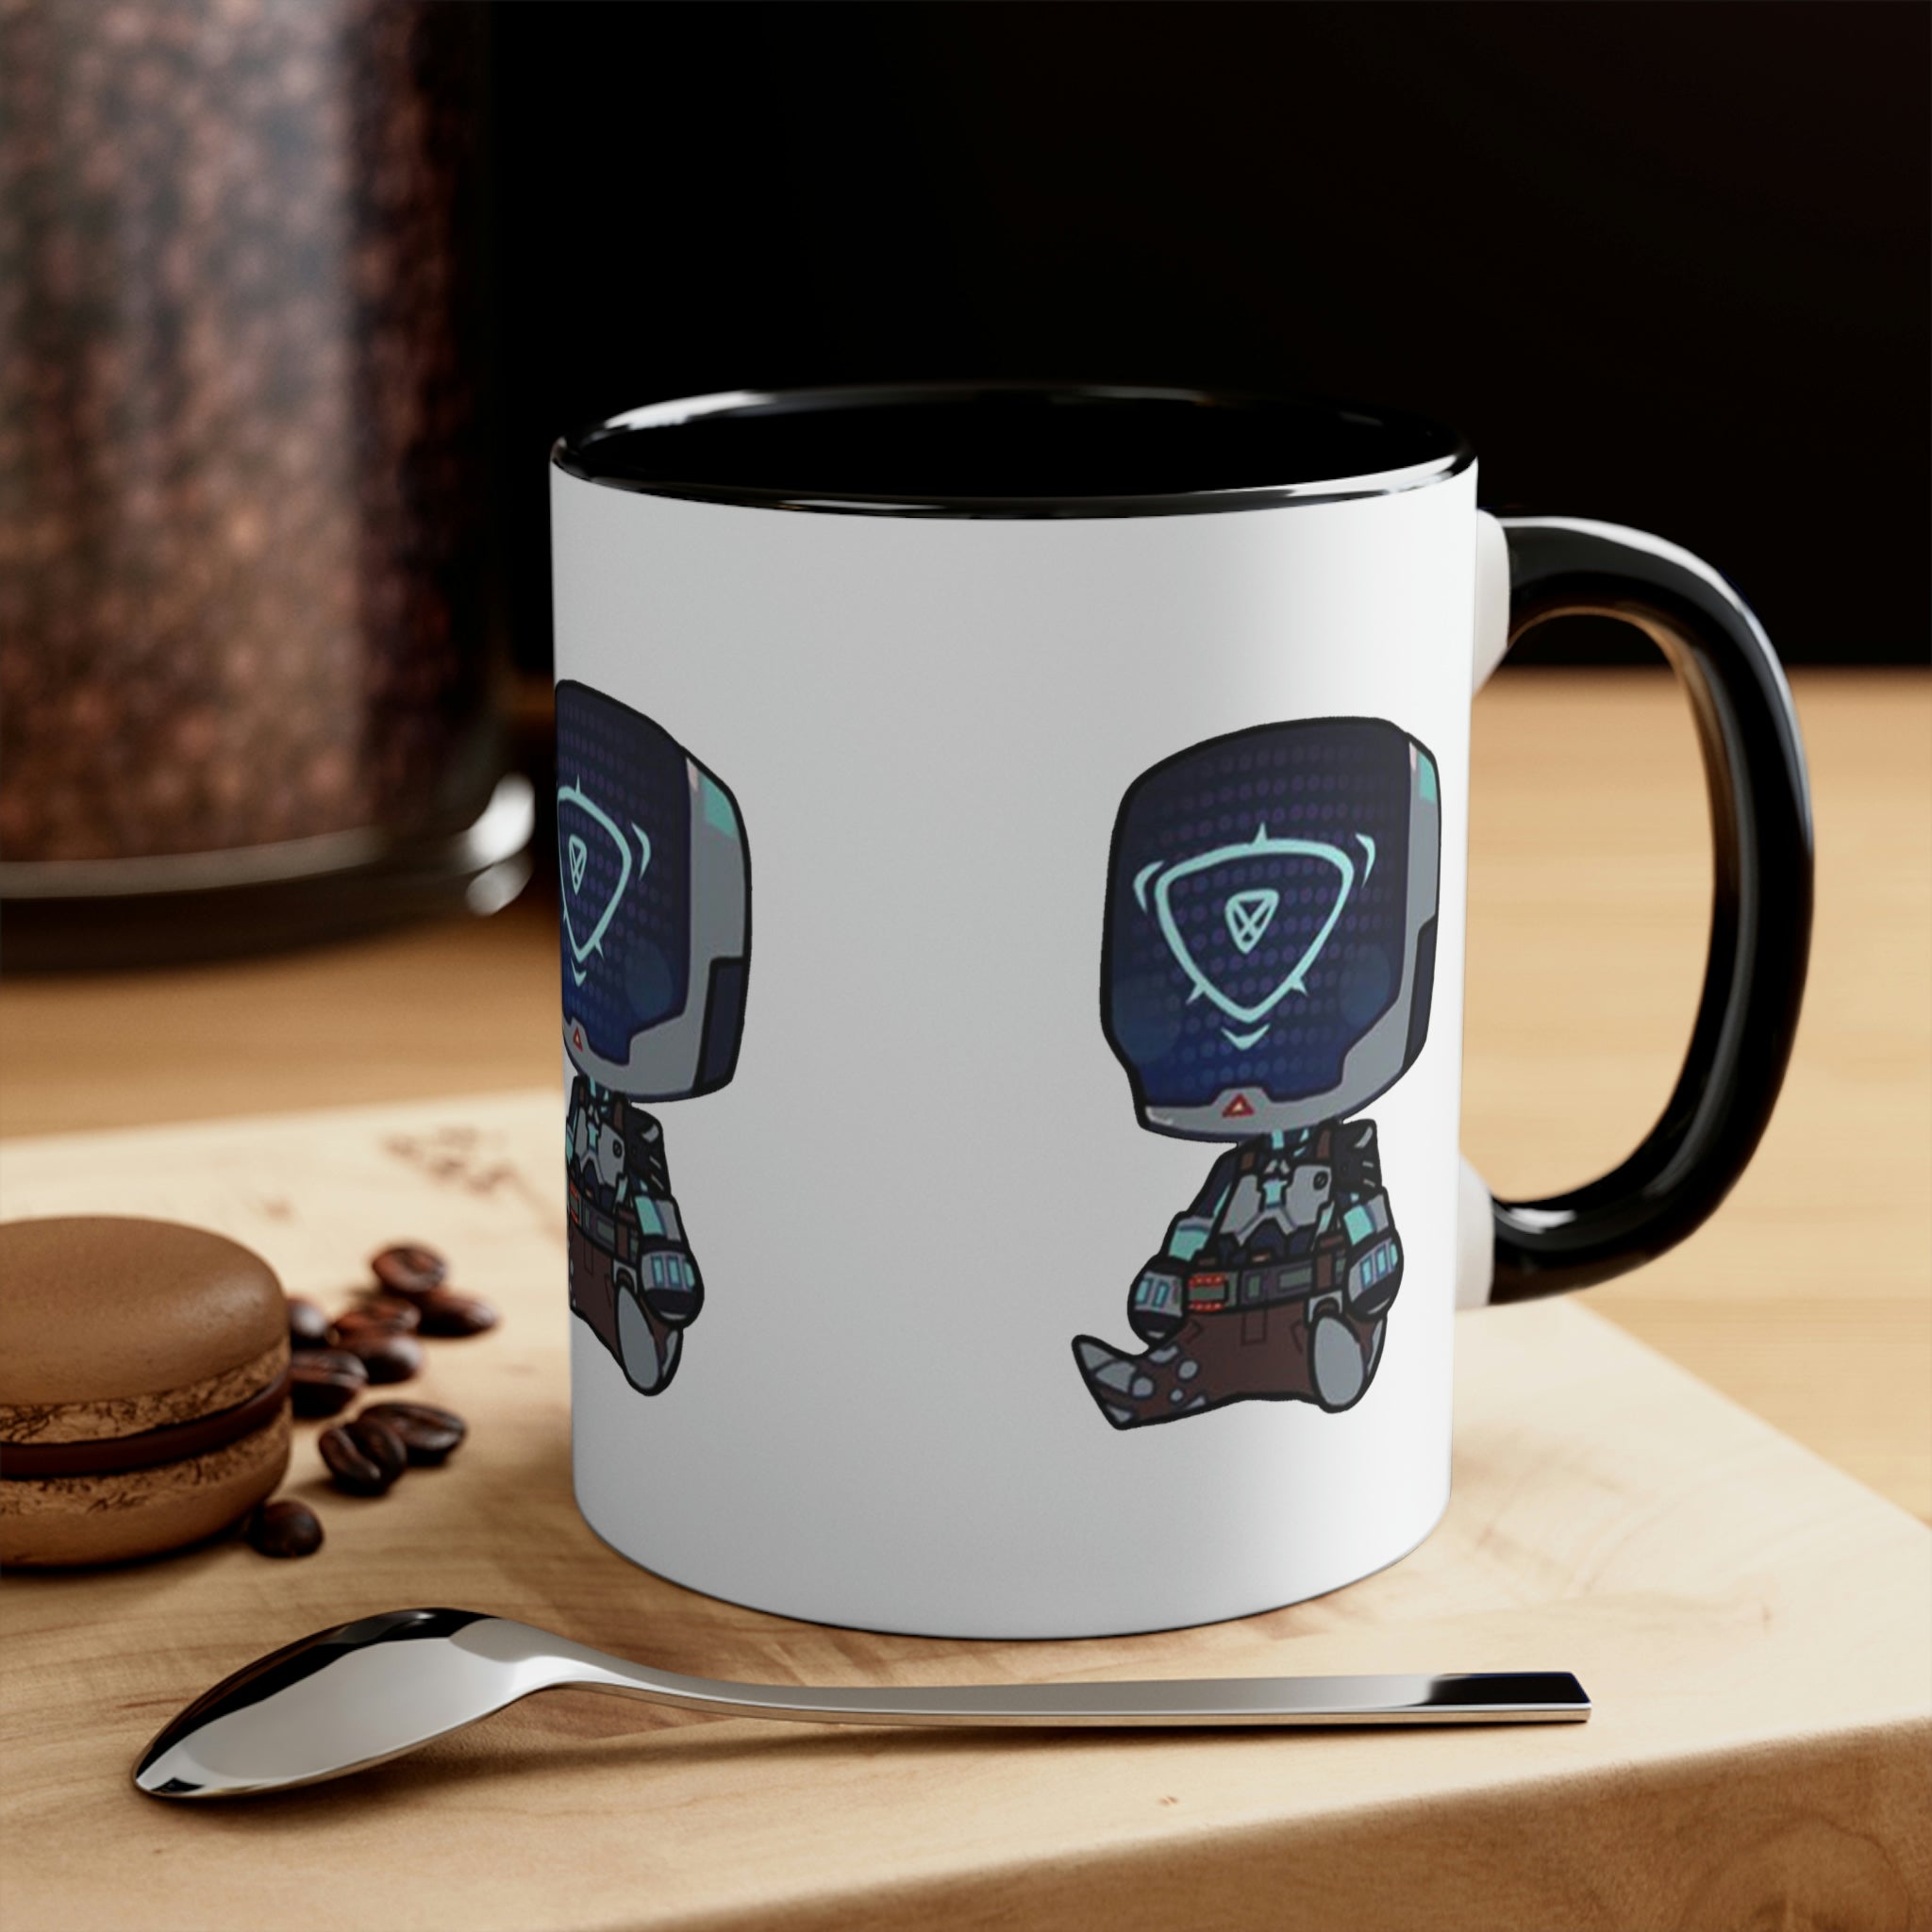 Kayo Accent Coffee Mug, 11oz